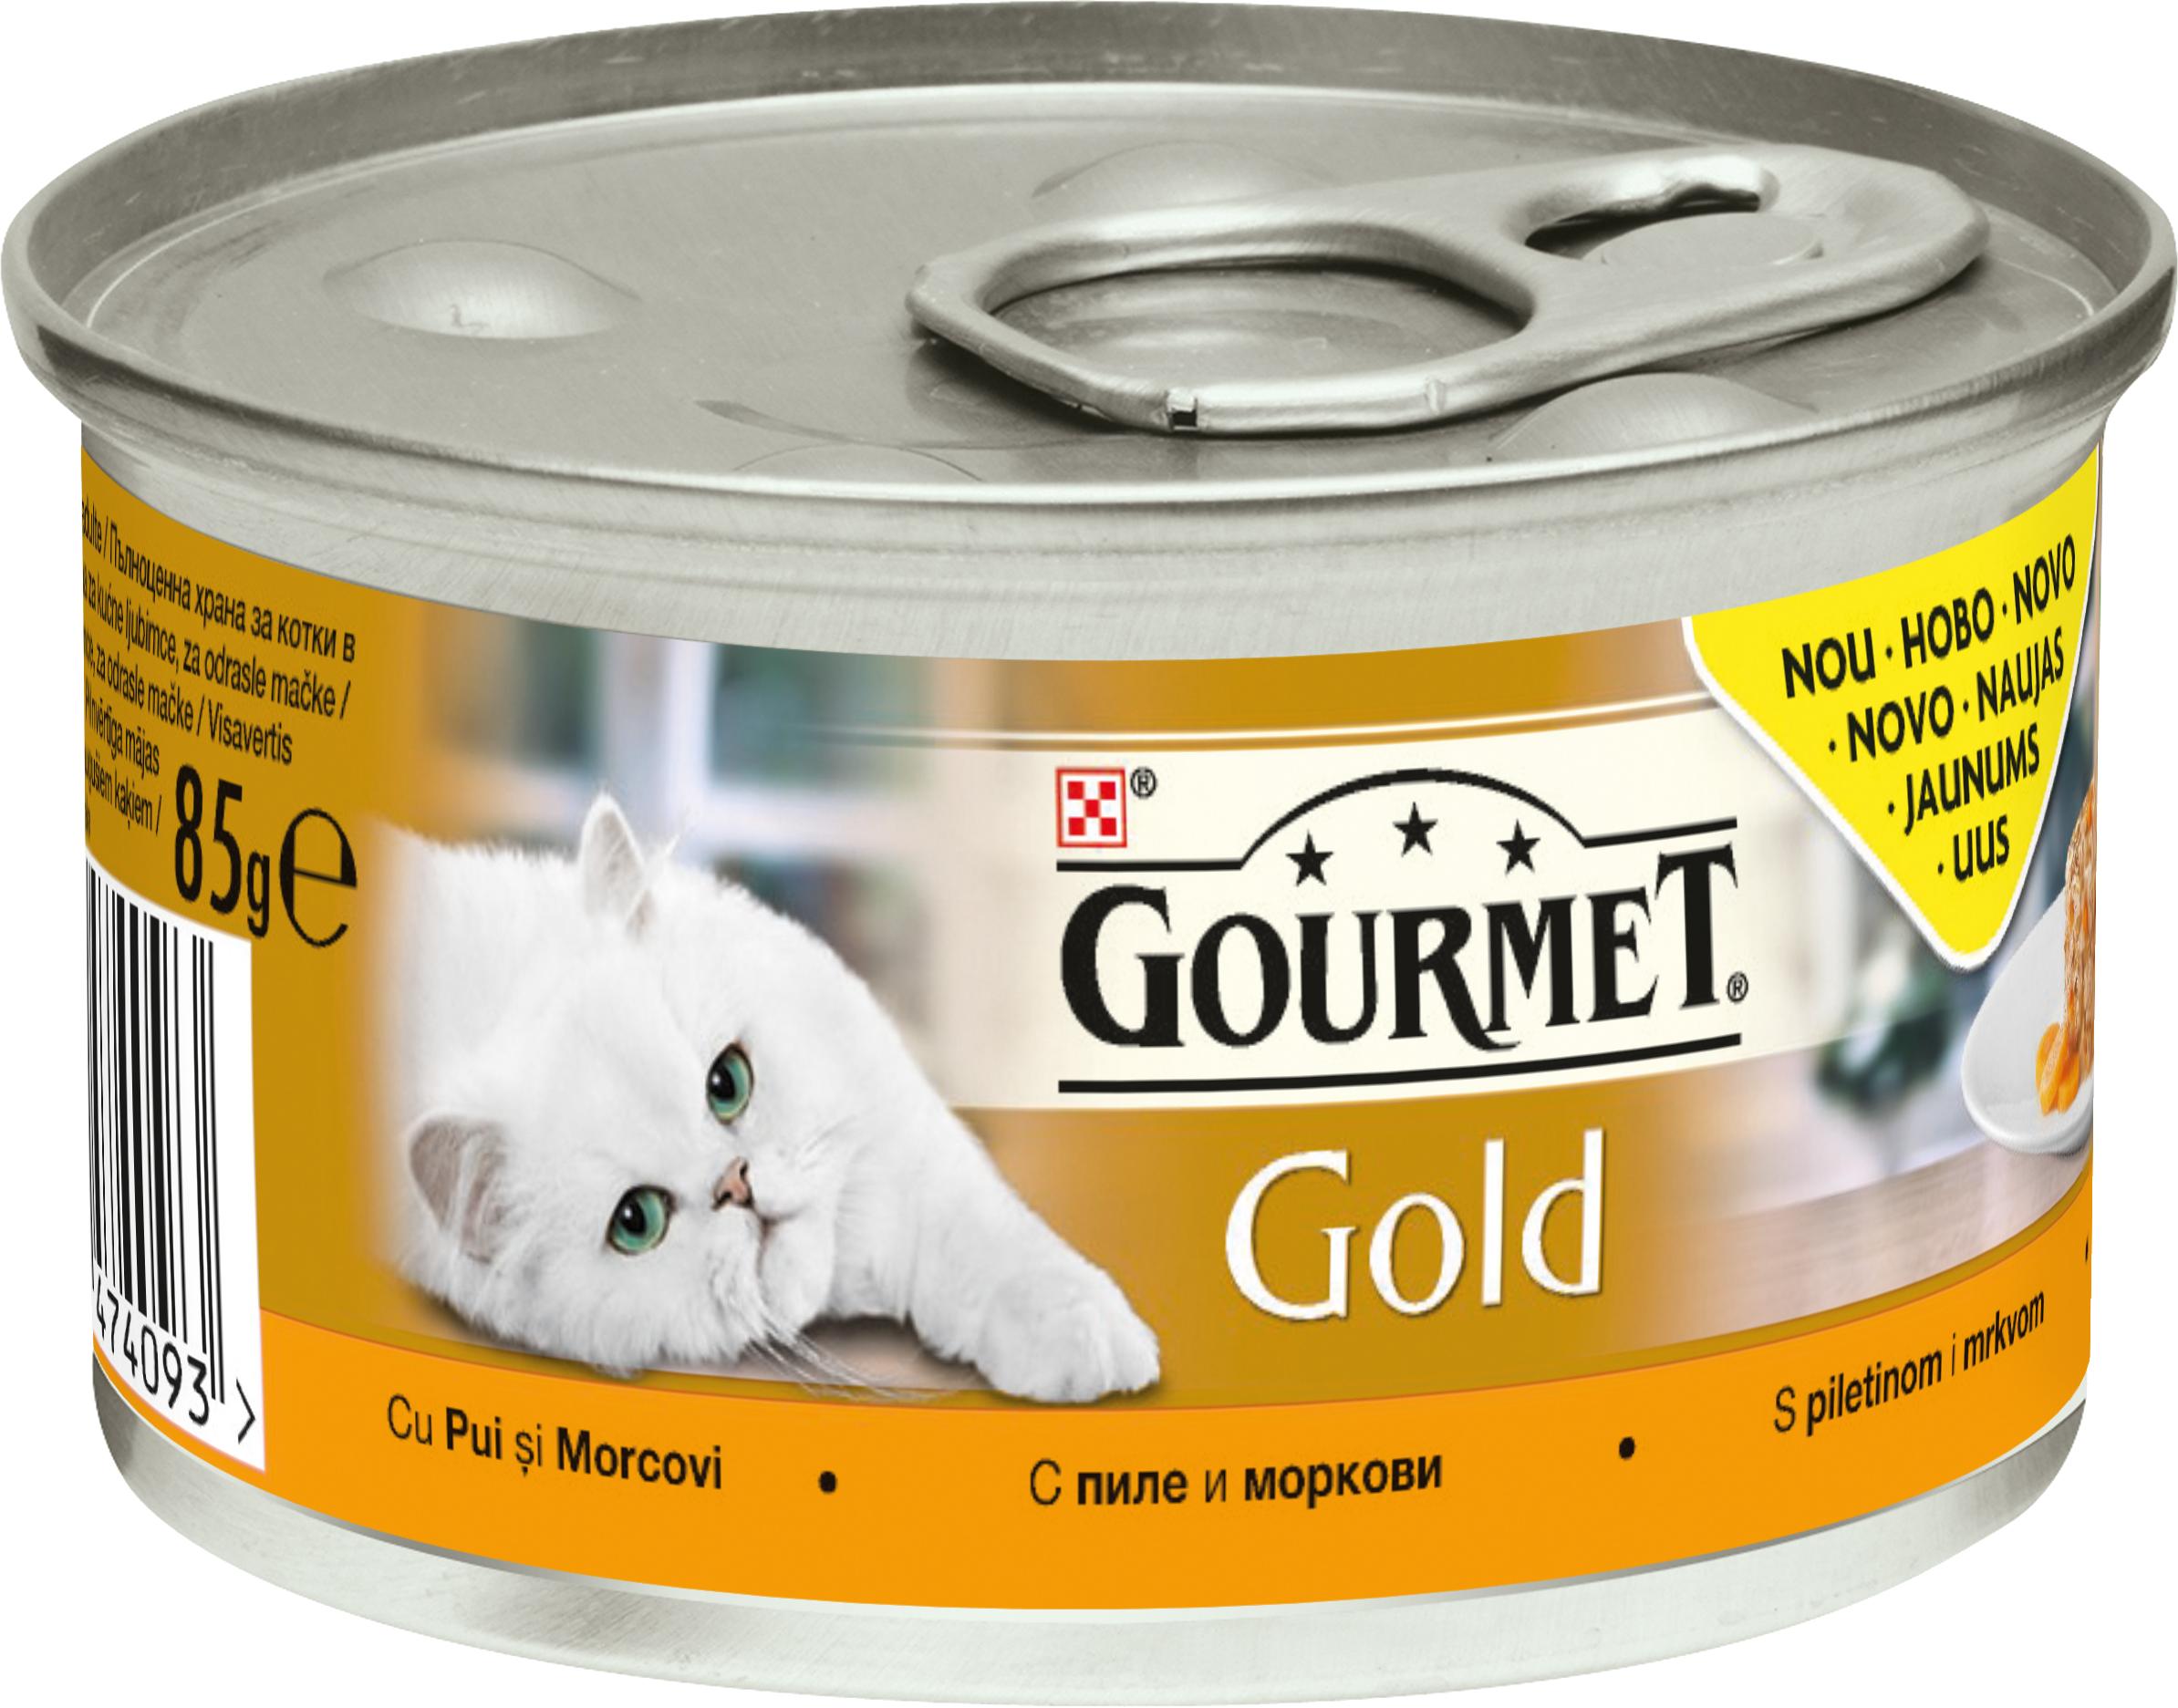 Slika za Hrana za mačke Gourmet Gold savory cake piletina 85g